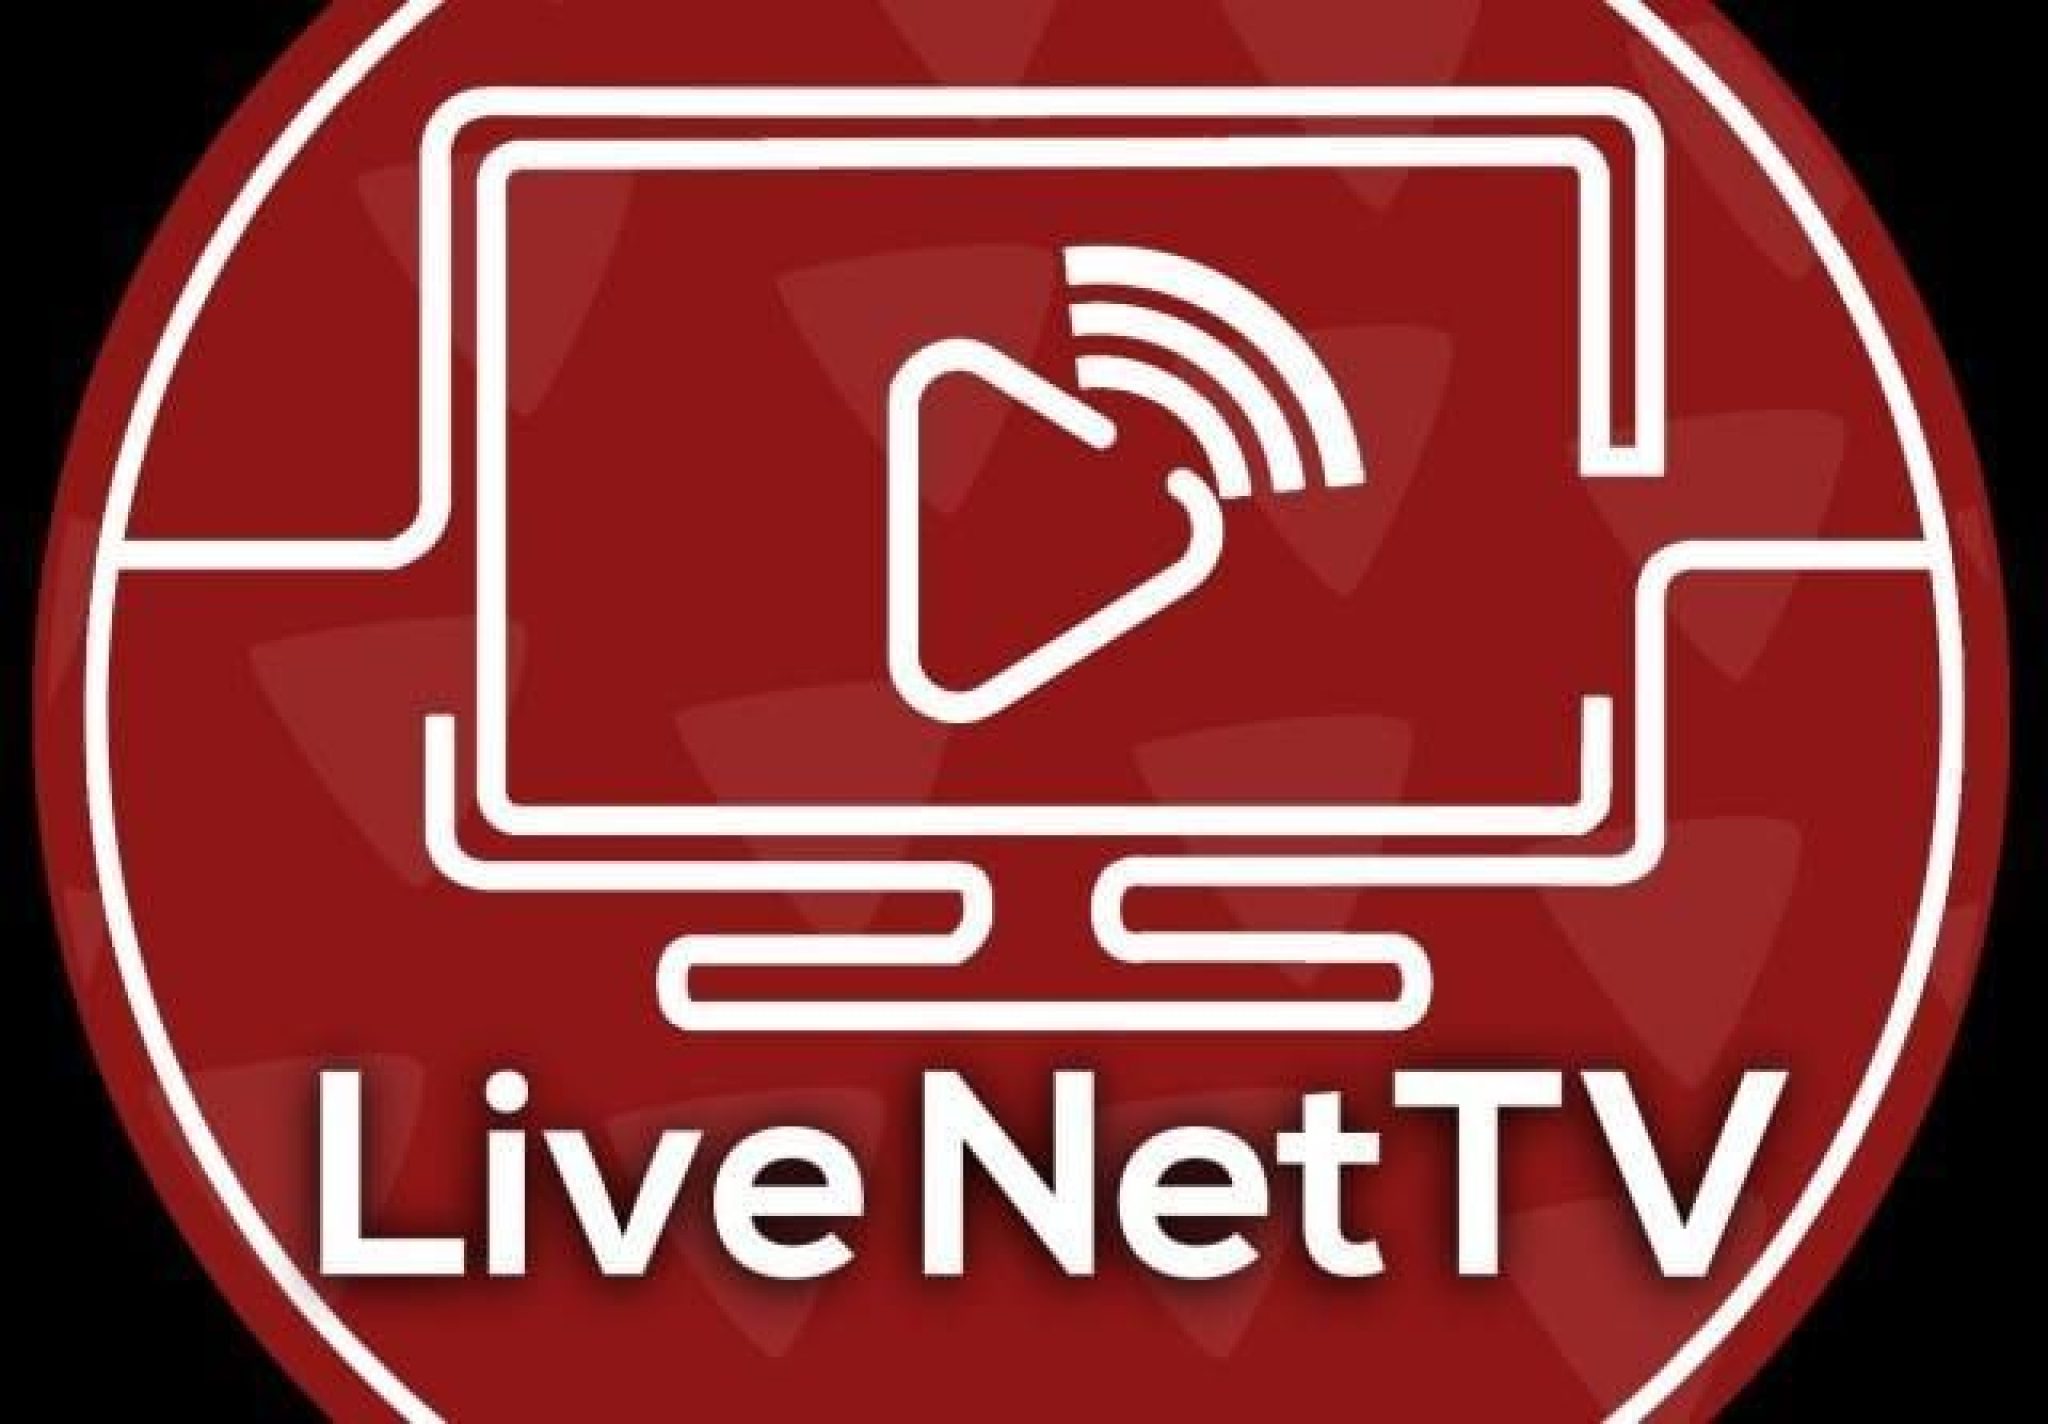 Live NetTV Premium APK Ads Free v4.8.6 Download Link 2021